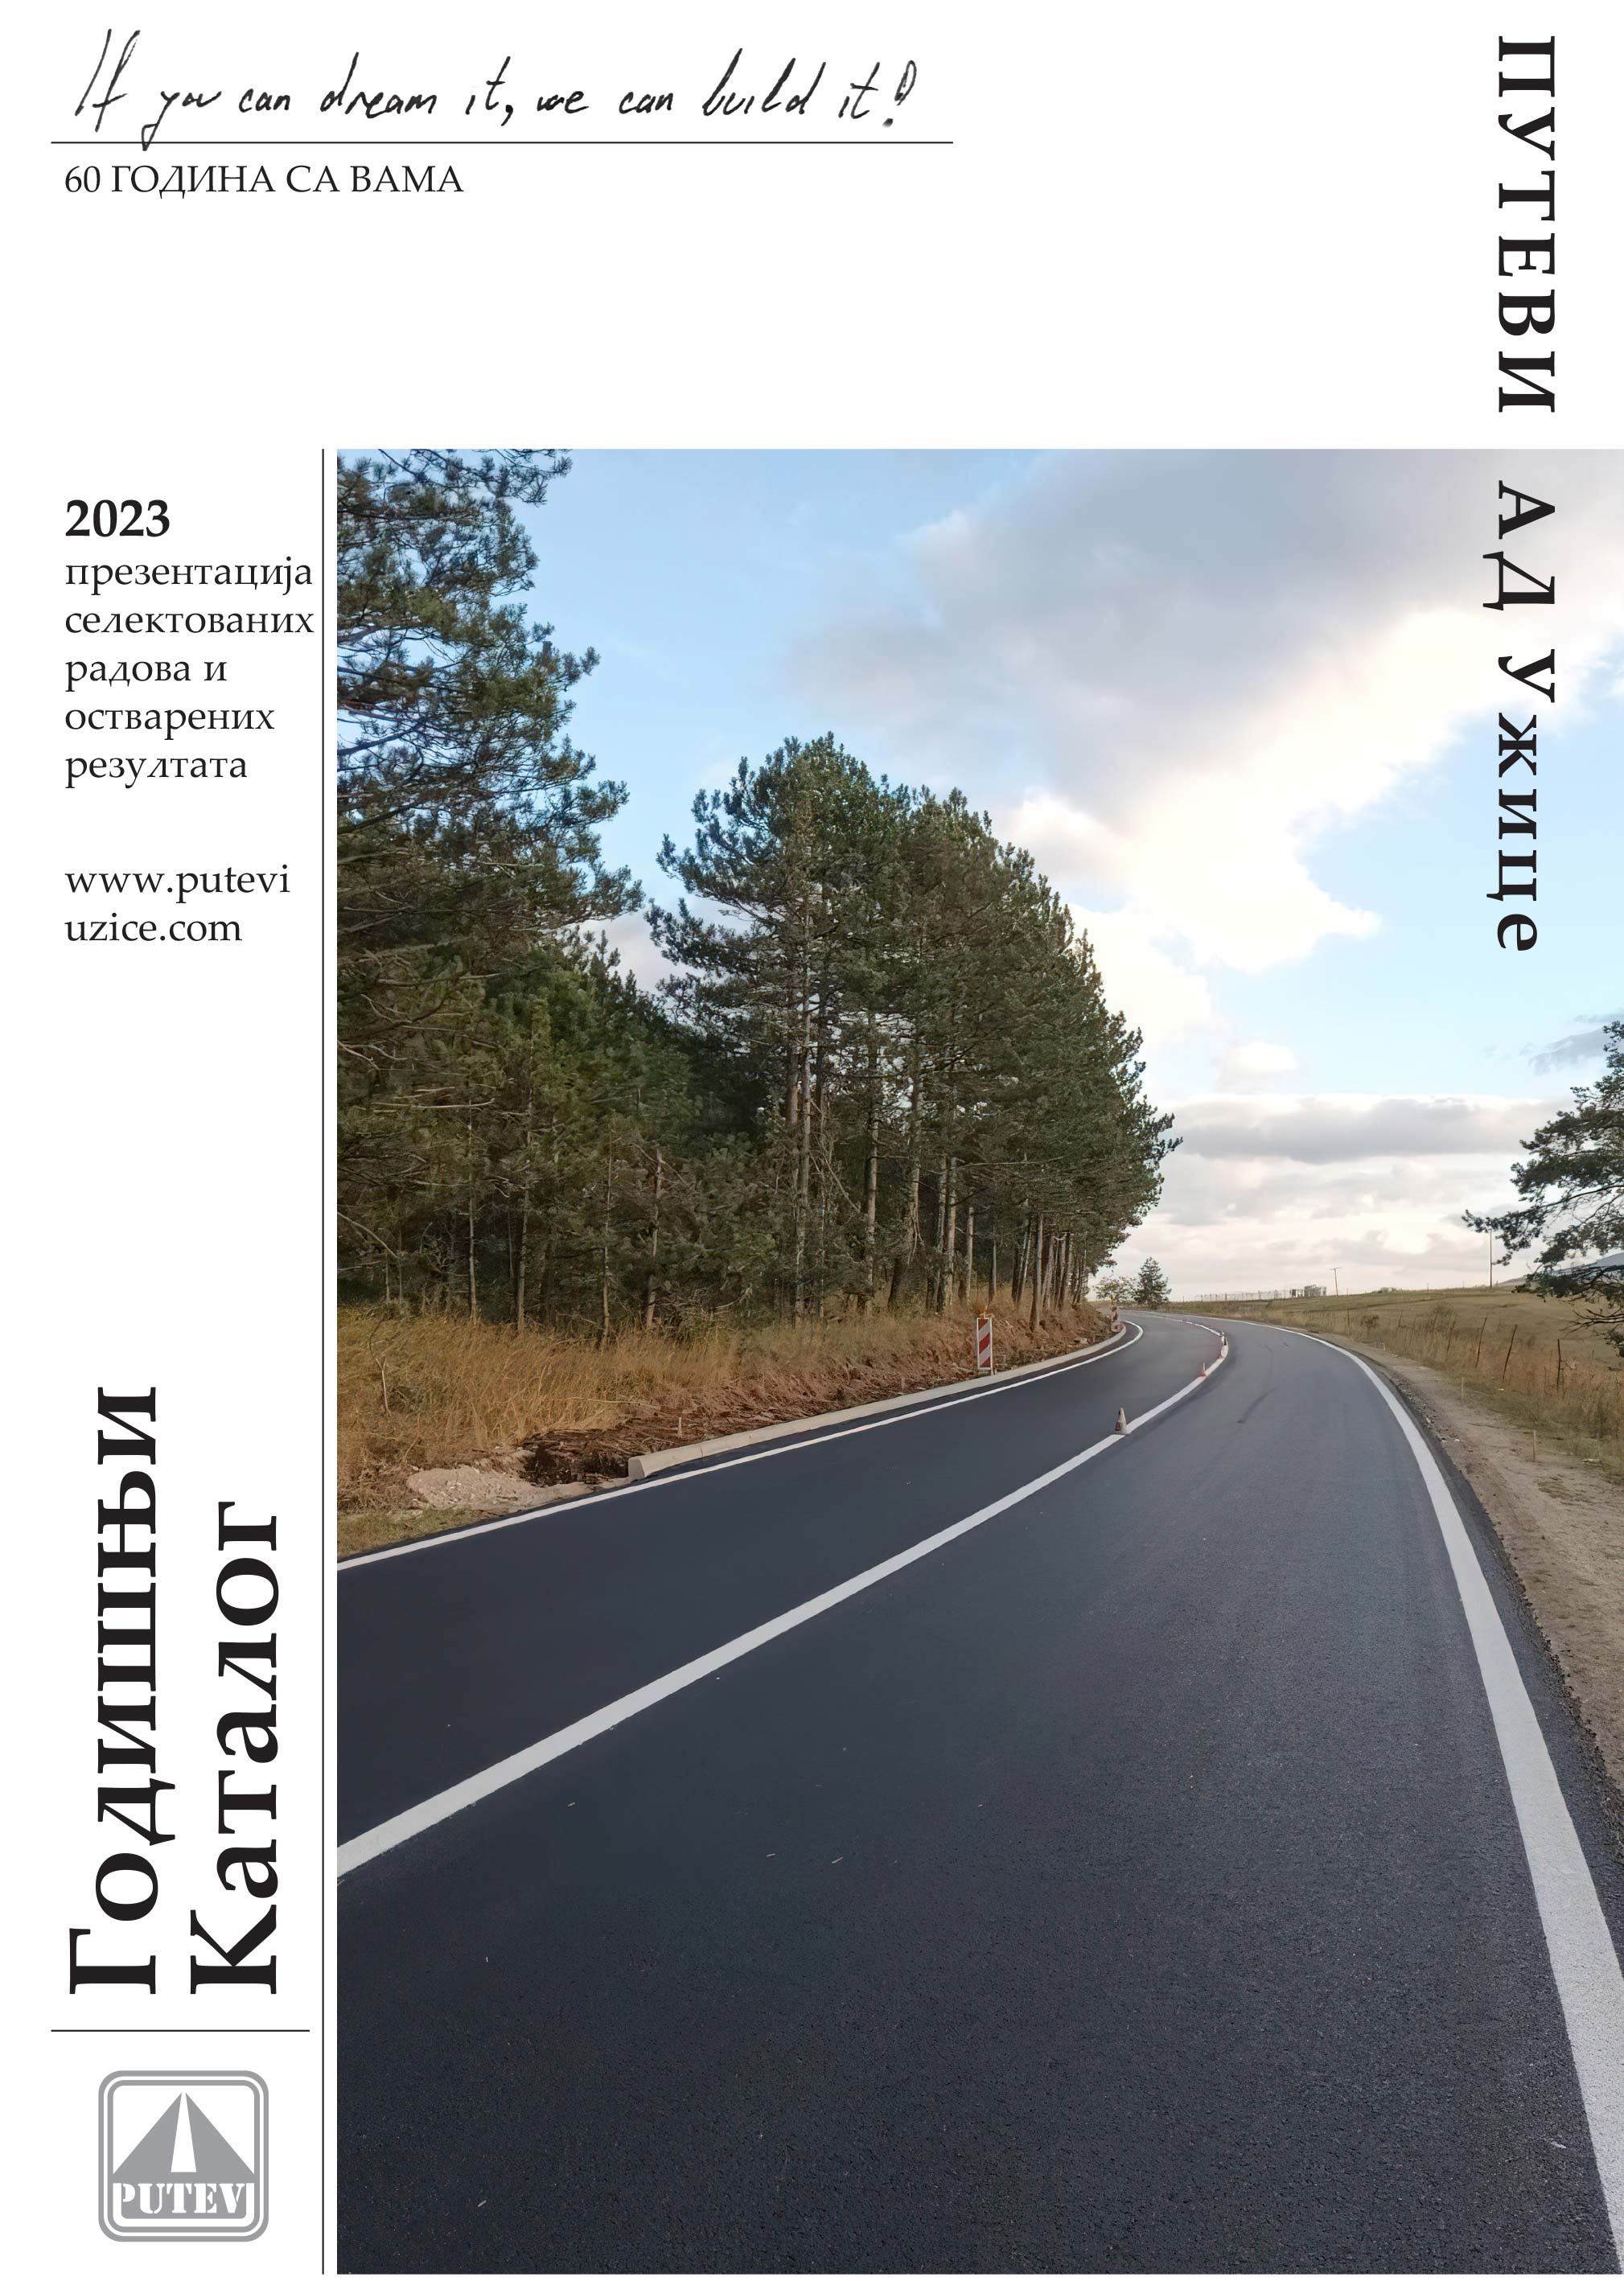 Putevi Užice | Godišnji katalog 2023